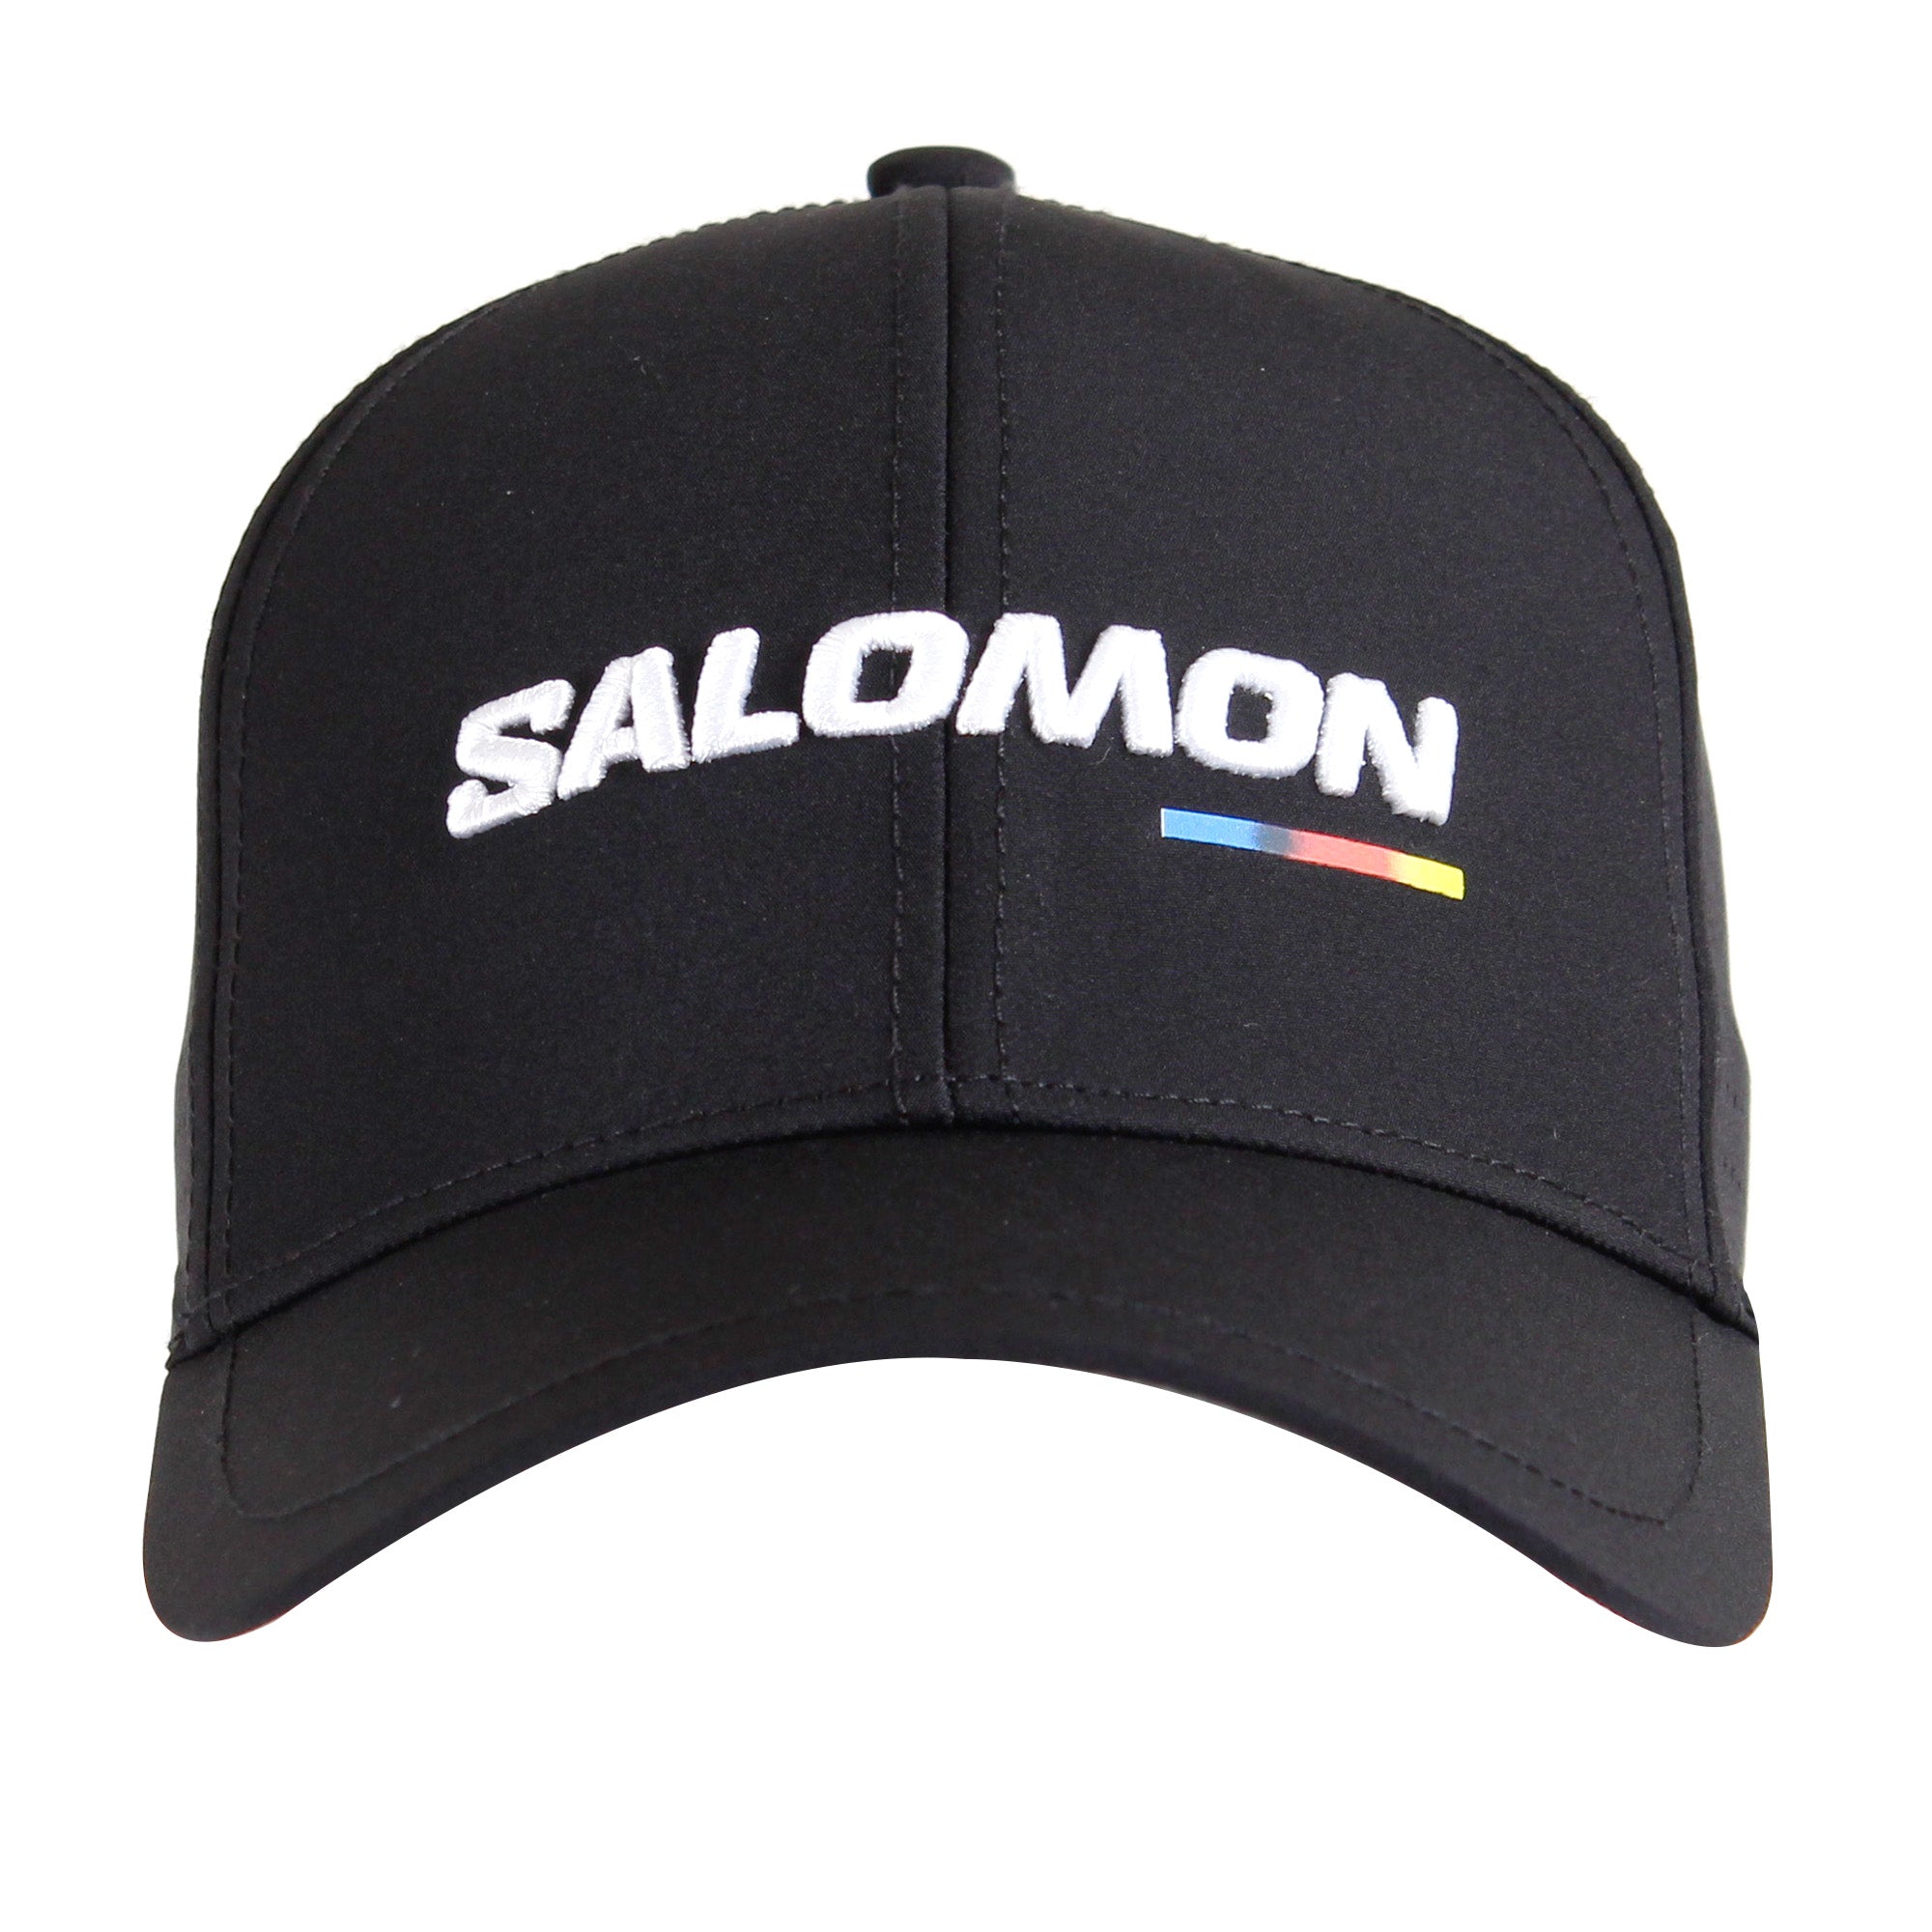 SALOMON RACE M – Salomon Sports